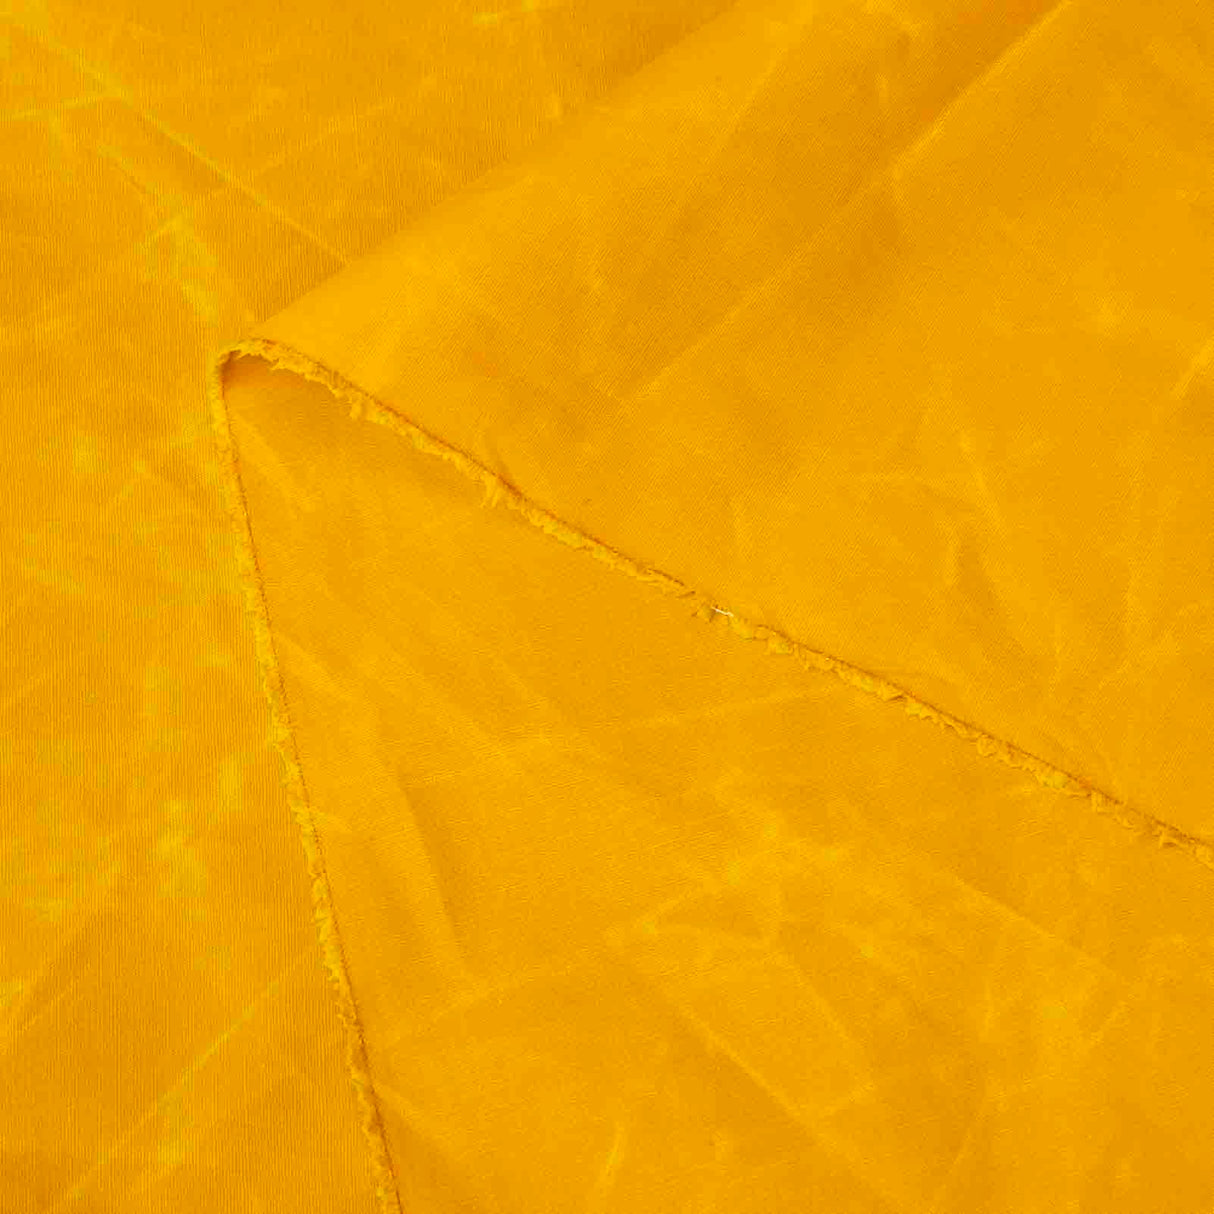 8 oz Waxed Canvas (18 x 58) - Mustard Yellow